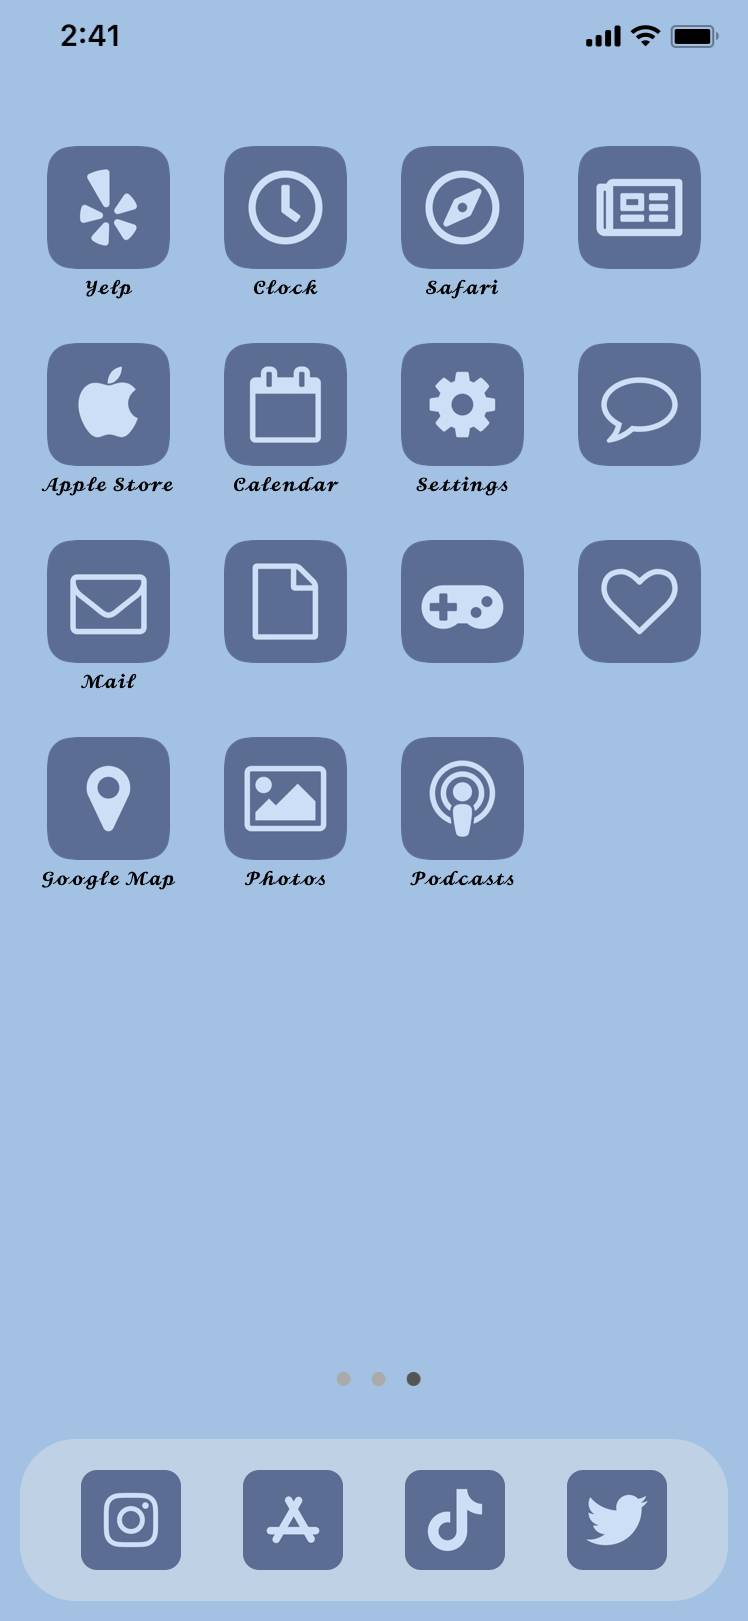 Blue Pack {icon,widget,wallpaper}Ιδέες για την αρχική οθόνη[J3wMGbp4ildSDf8D4cjk]